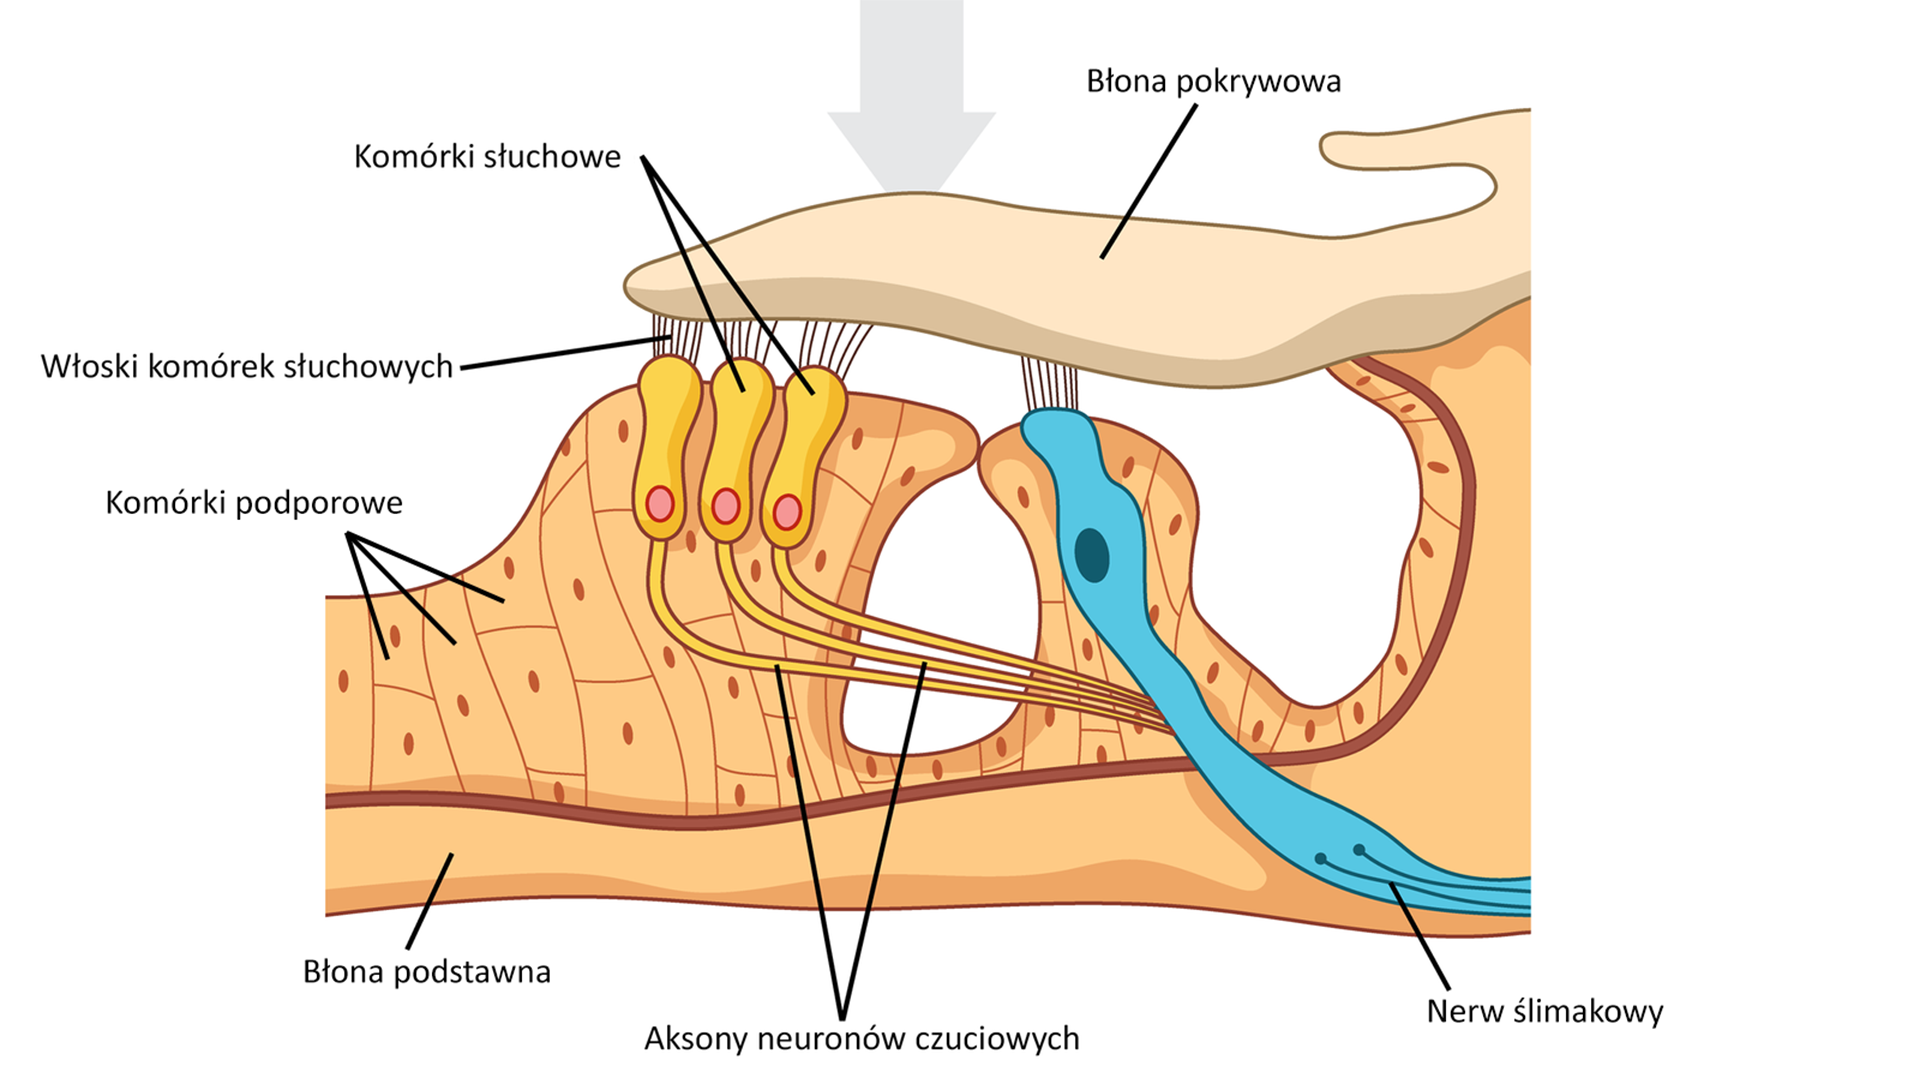 Schemat budowy ucha wewnętrznego kręgowców. Od góry za pomocą strzałki ukazane jest miejsce dotarcia dźwięku do błony pokrywowej, płaskiego tworu w kolorze kremowym. Drgania są przekazywane za pomocą włosków do podłużnych komórek słuchowych oraz nerwu słuchowego. Komórki słuchowe również łączą się za pomocą aksonów nerwów czuciowych z nerwem słuchowym. Nerw słuchowy wnika w ostatnią, położoną najniżej na schemacie warstwę – błonę podstawną.    